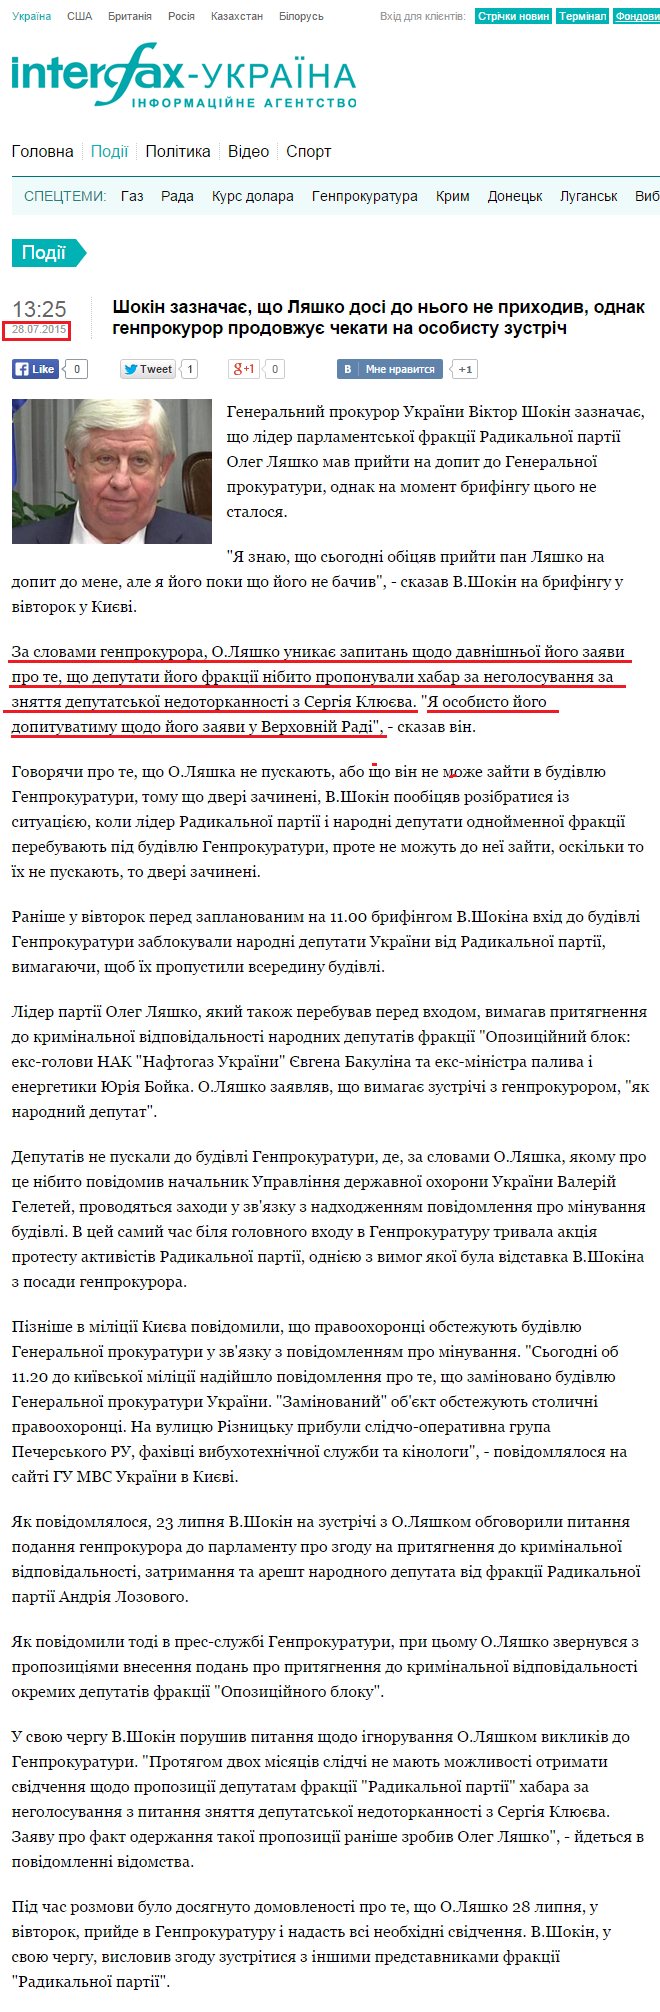 http://ua.interfax.com.ua/news/general/280596.html